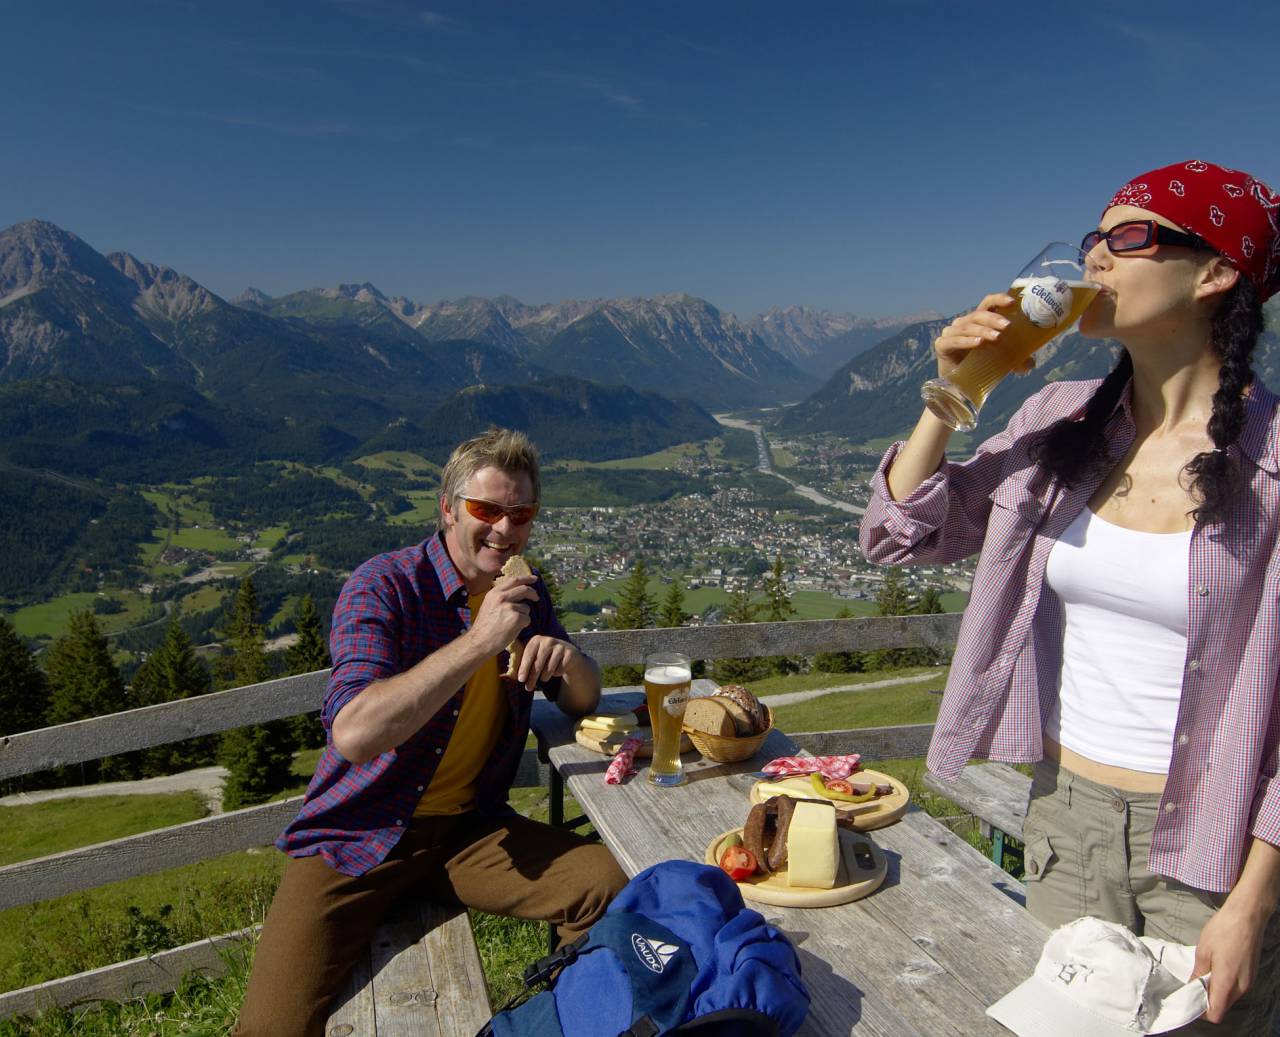 Pärchen bei einer Jause in den Bergen mit Wurst, Käse und einem kühlen Bier